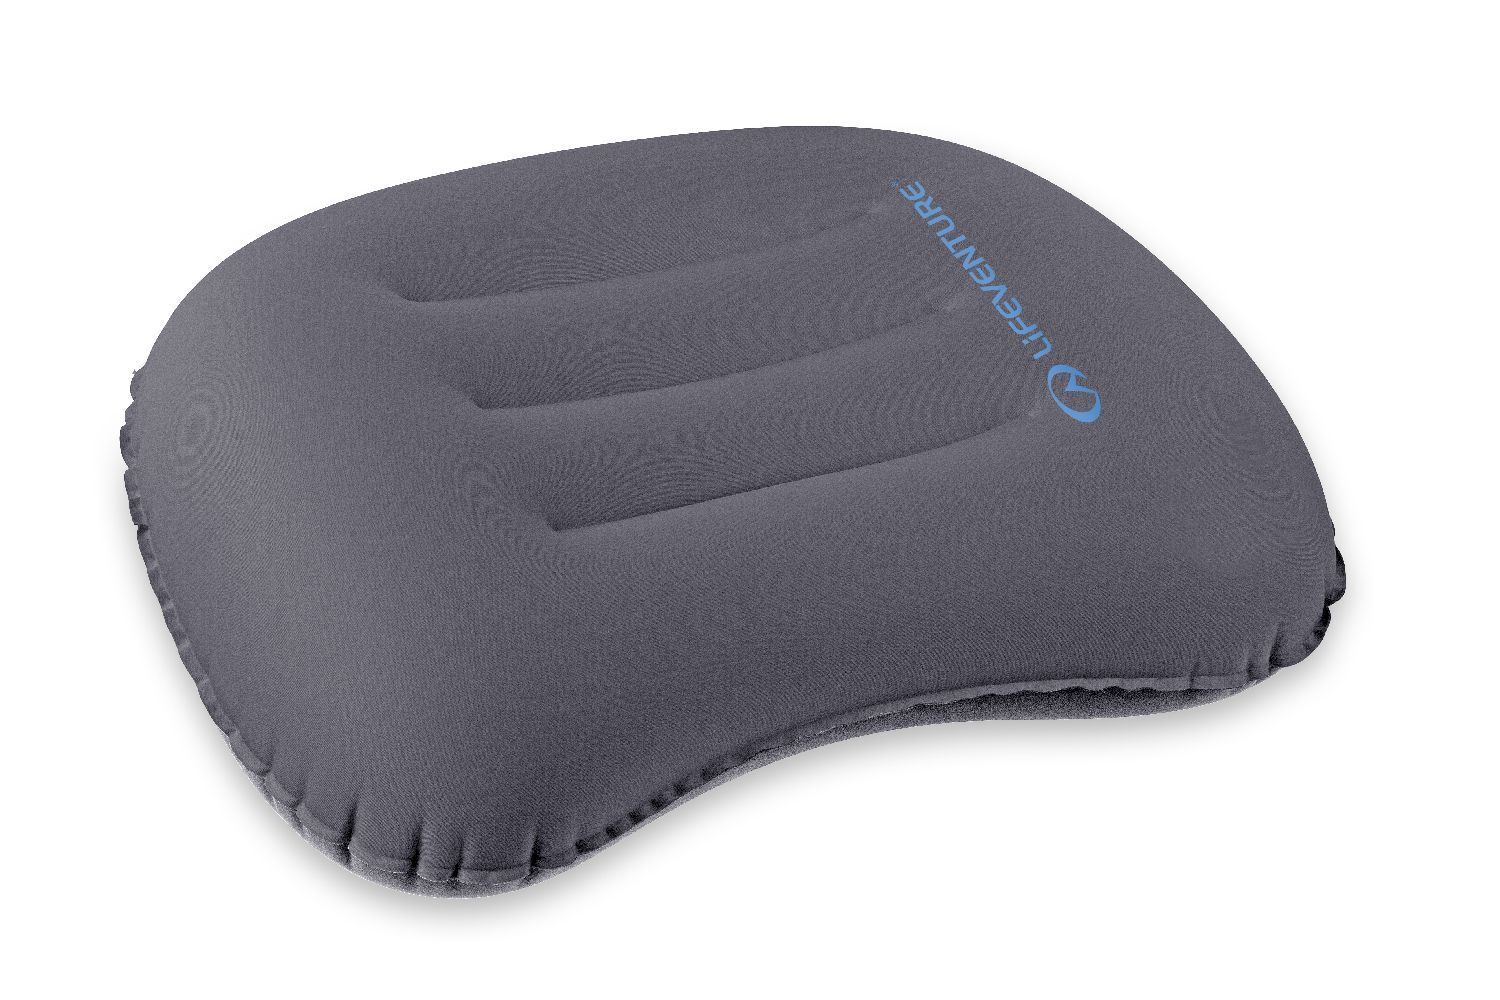 LittleLife Inflatable Pillow - Pillow